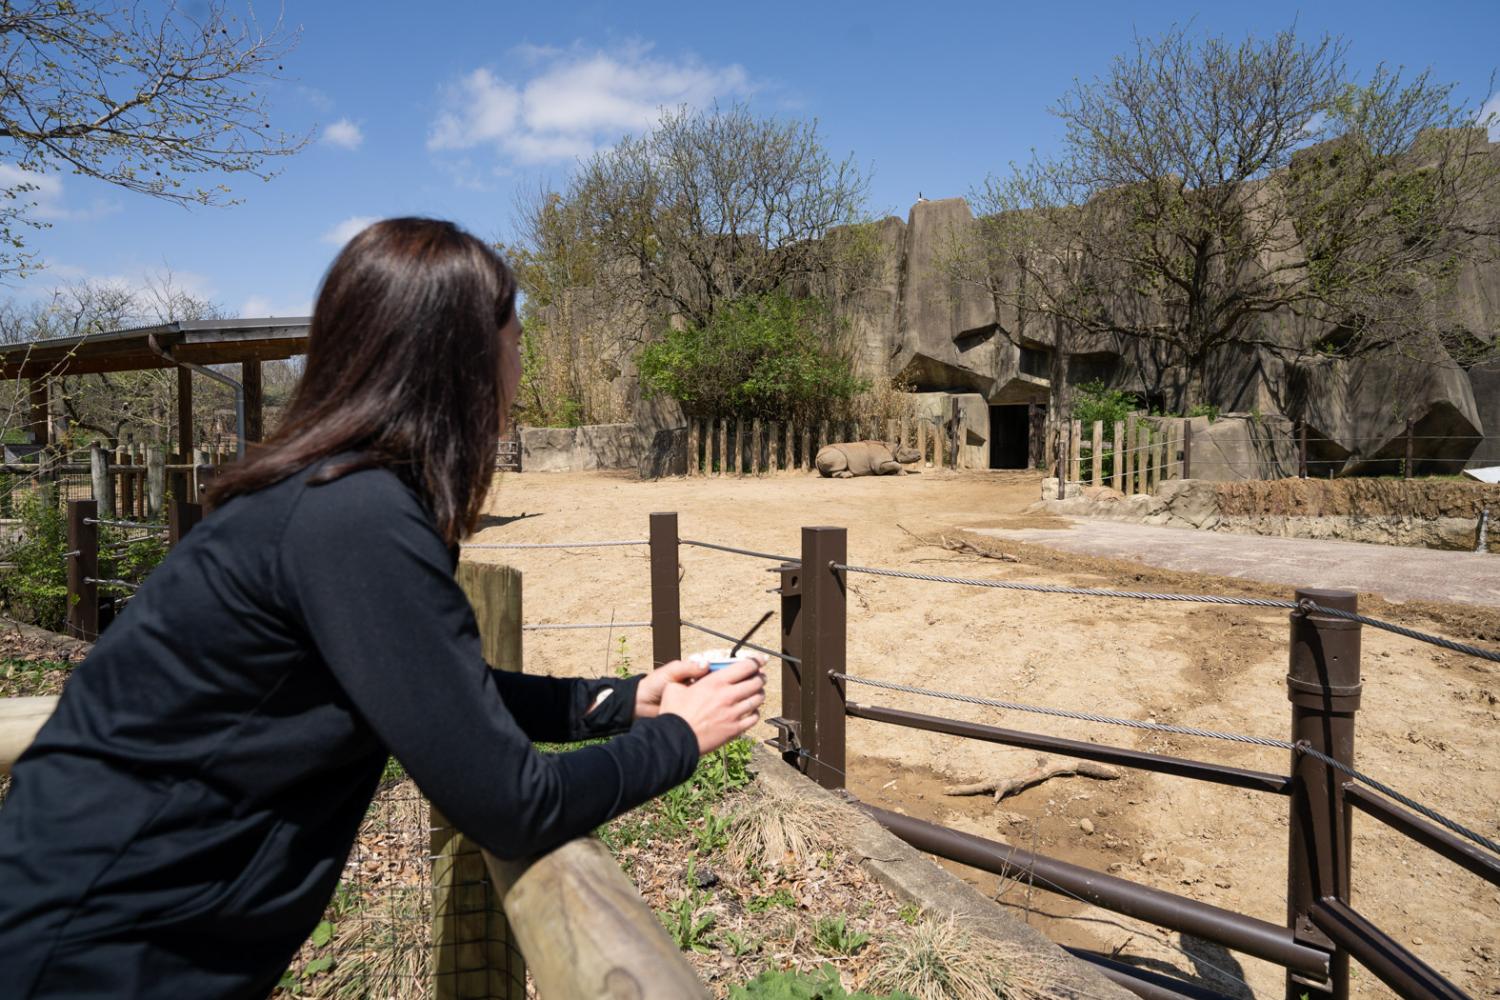 Caitlin Garling overlooking rhino habitat at the Zoo